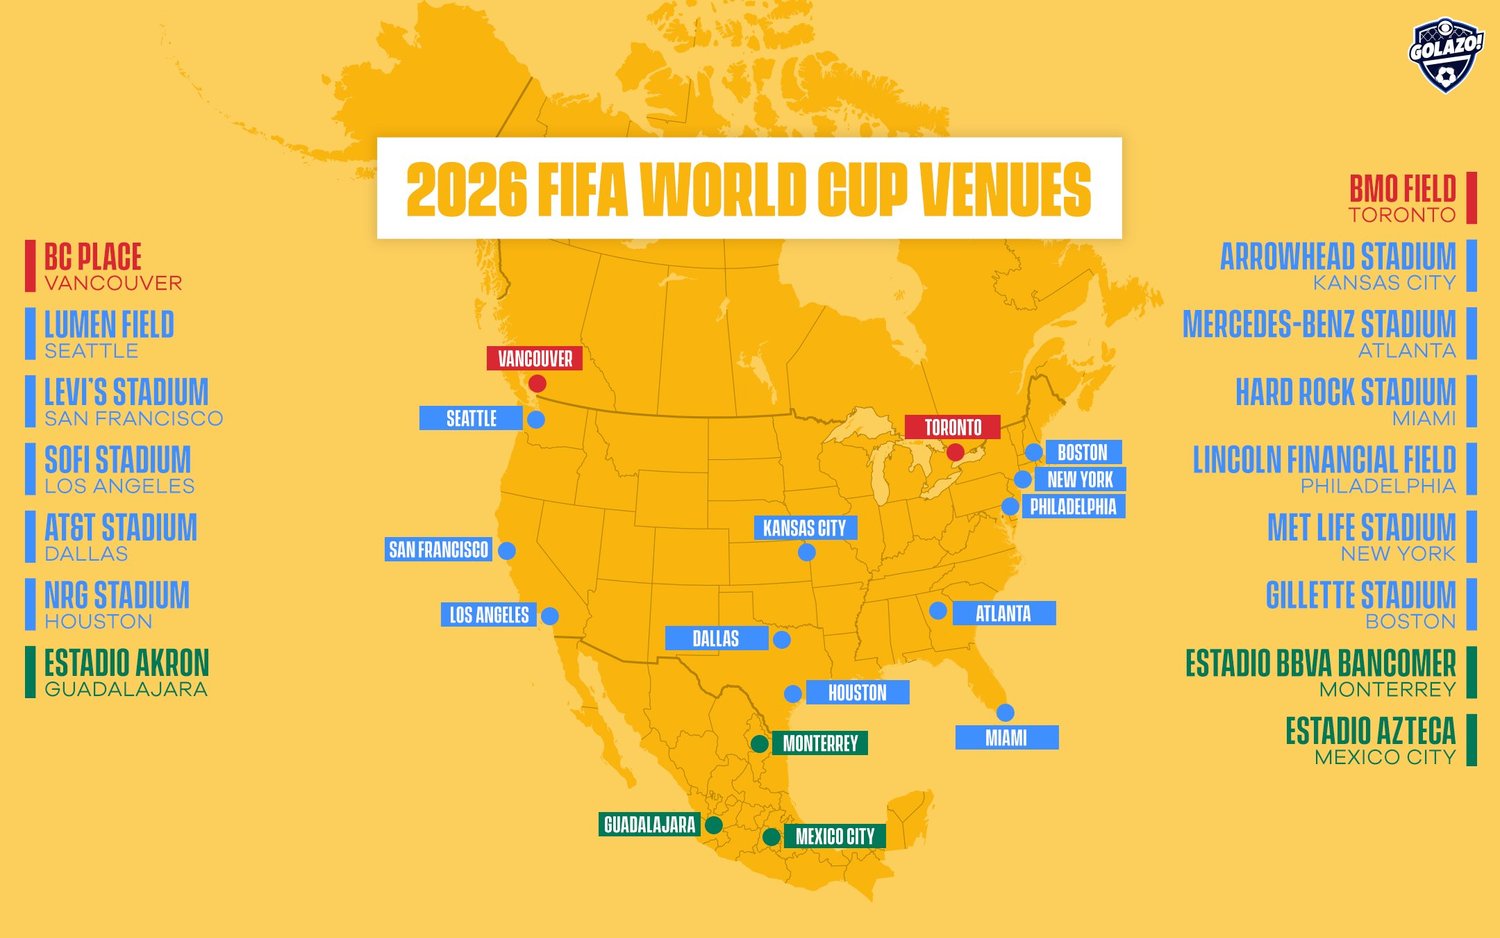 La FIFA reveló el calendario del Mundial 2026! - ¿Pensando en mudarte al extranjero en 2024? ✈️ Foro General de Viajes